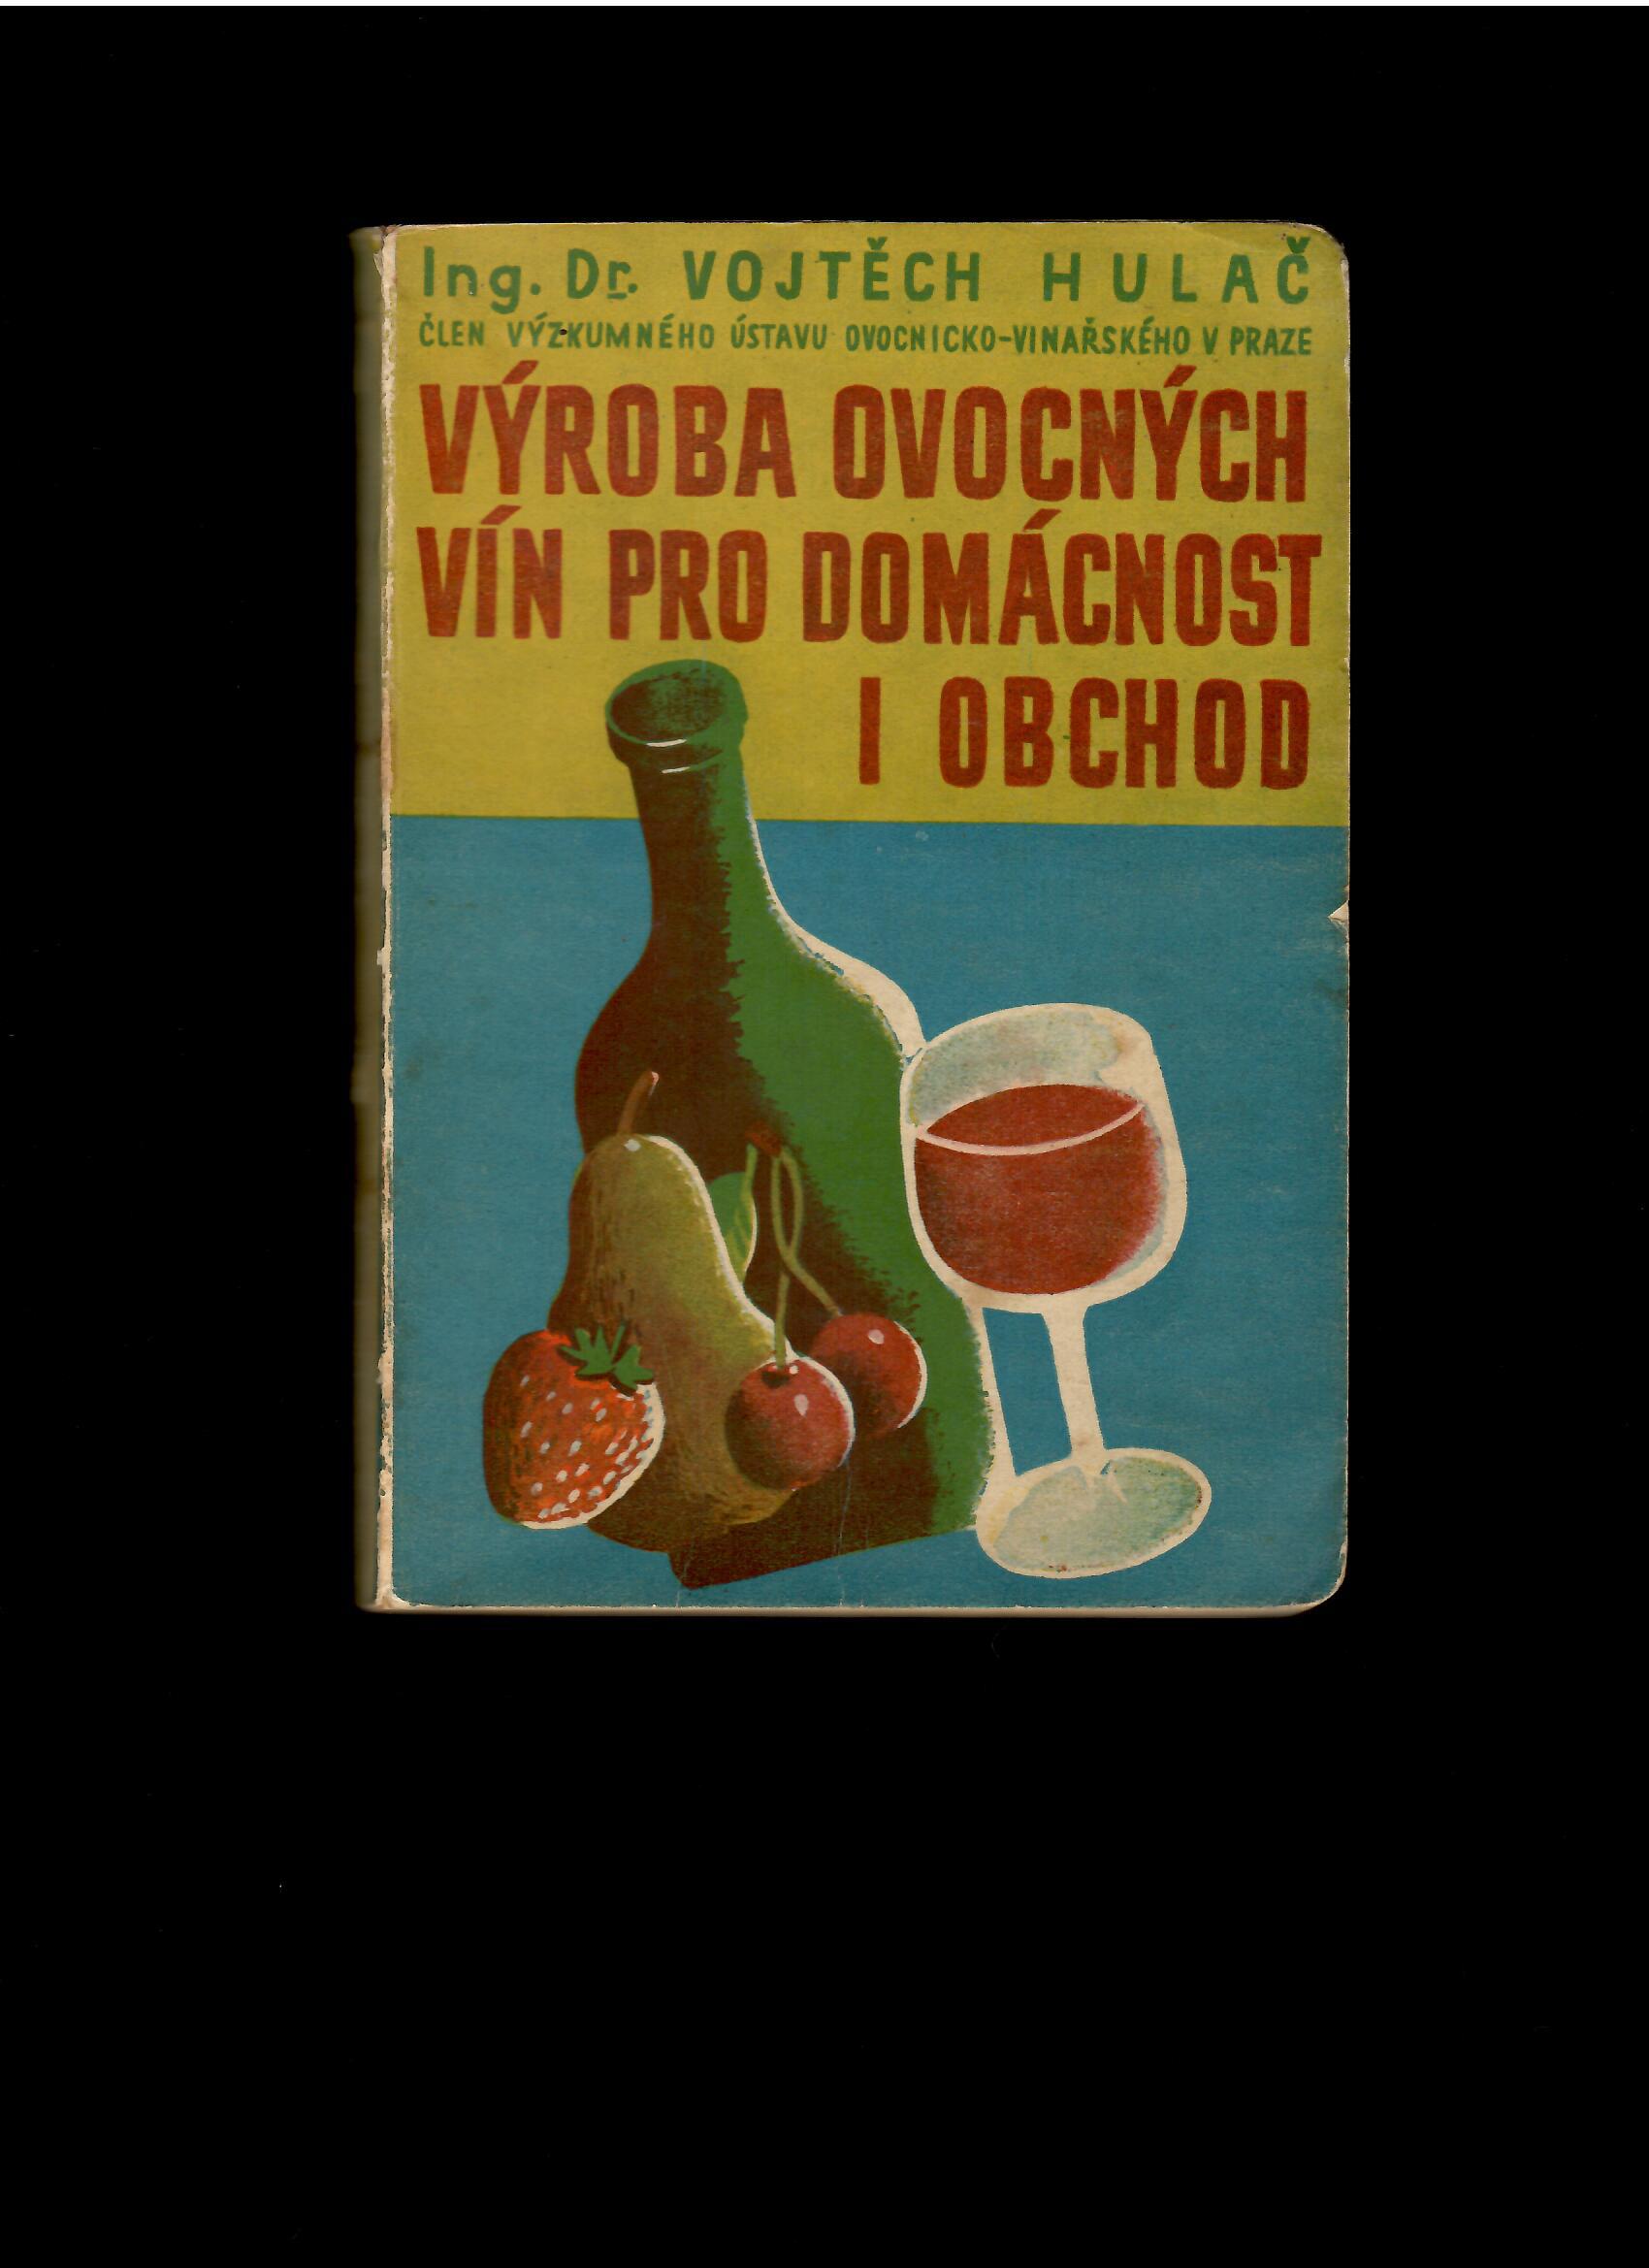 Vojtěch Hulač: Výroba ovocných vín pro domácnost i obchod /1946/